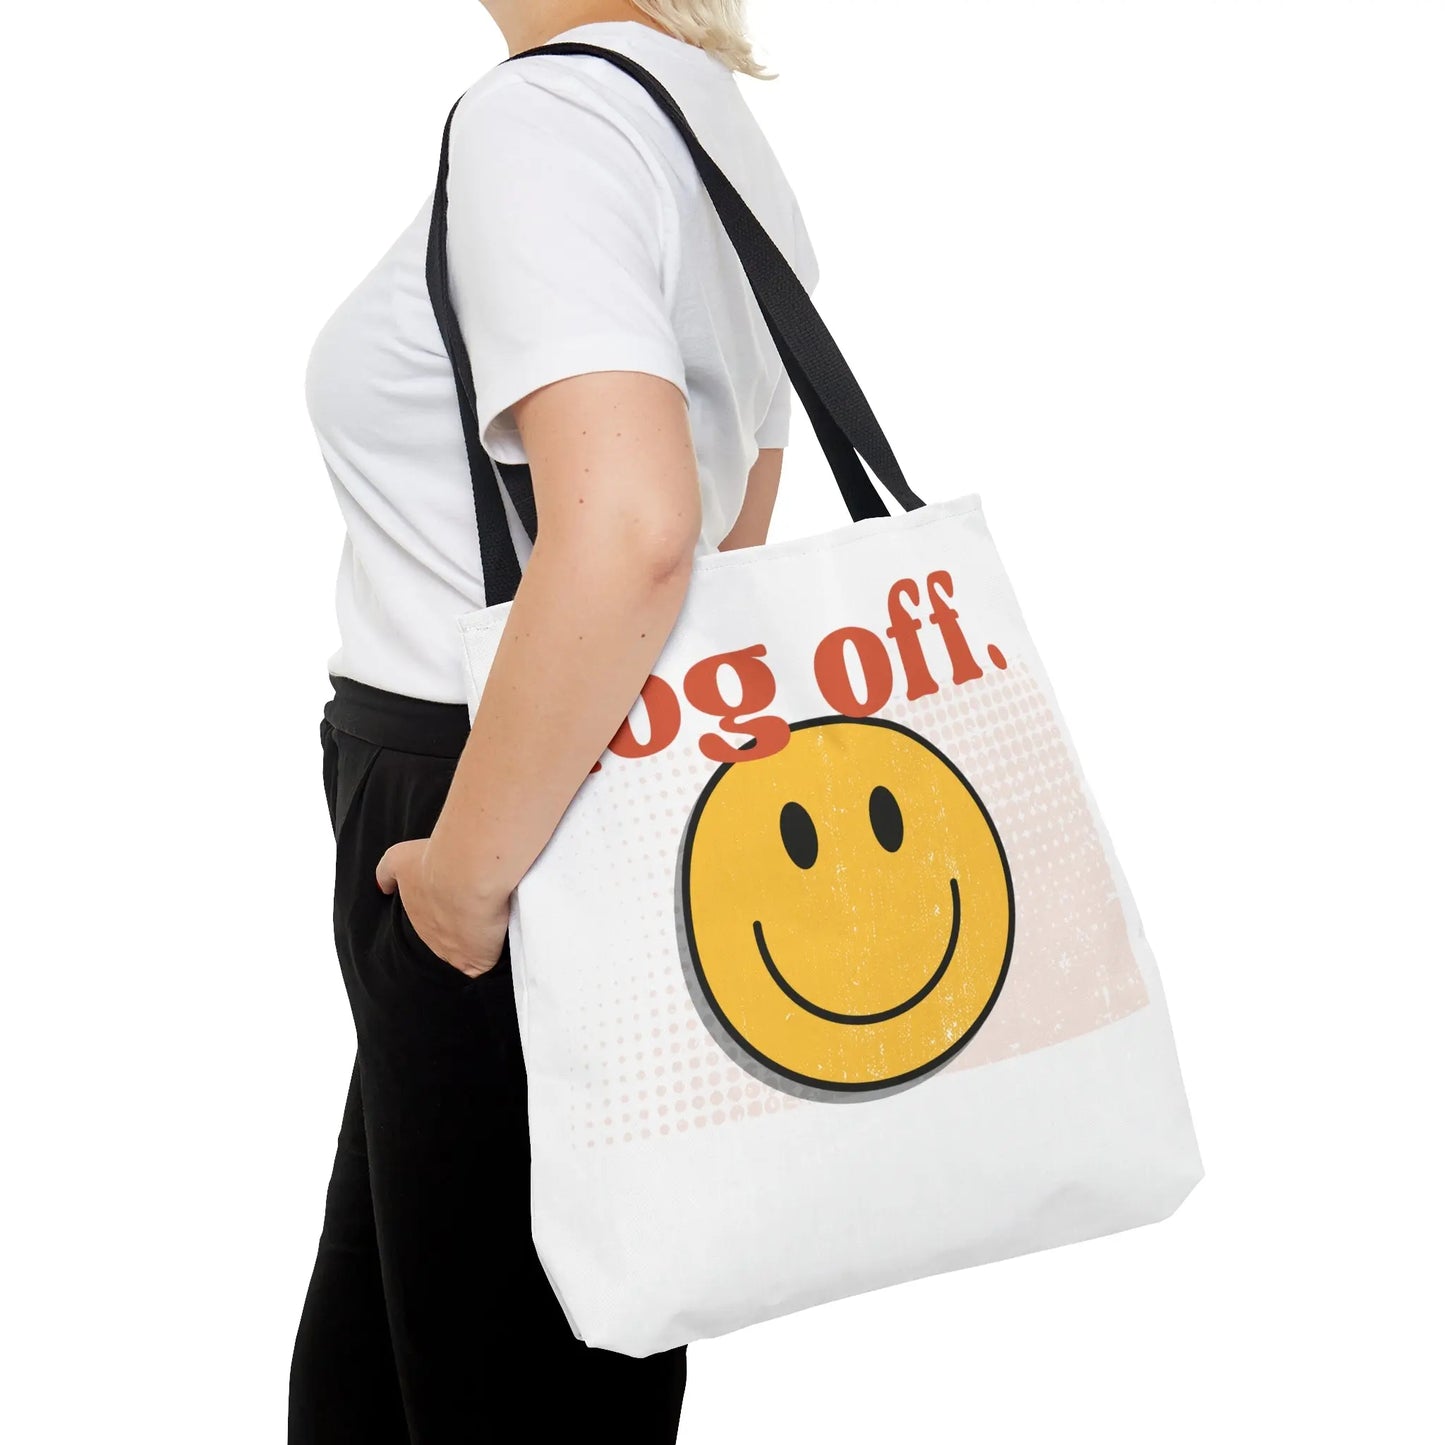 Stay Present with Retro 'Log Off' Smiley Face Bag - papercraneco